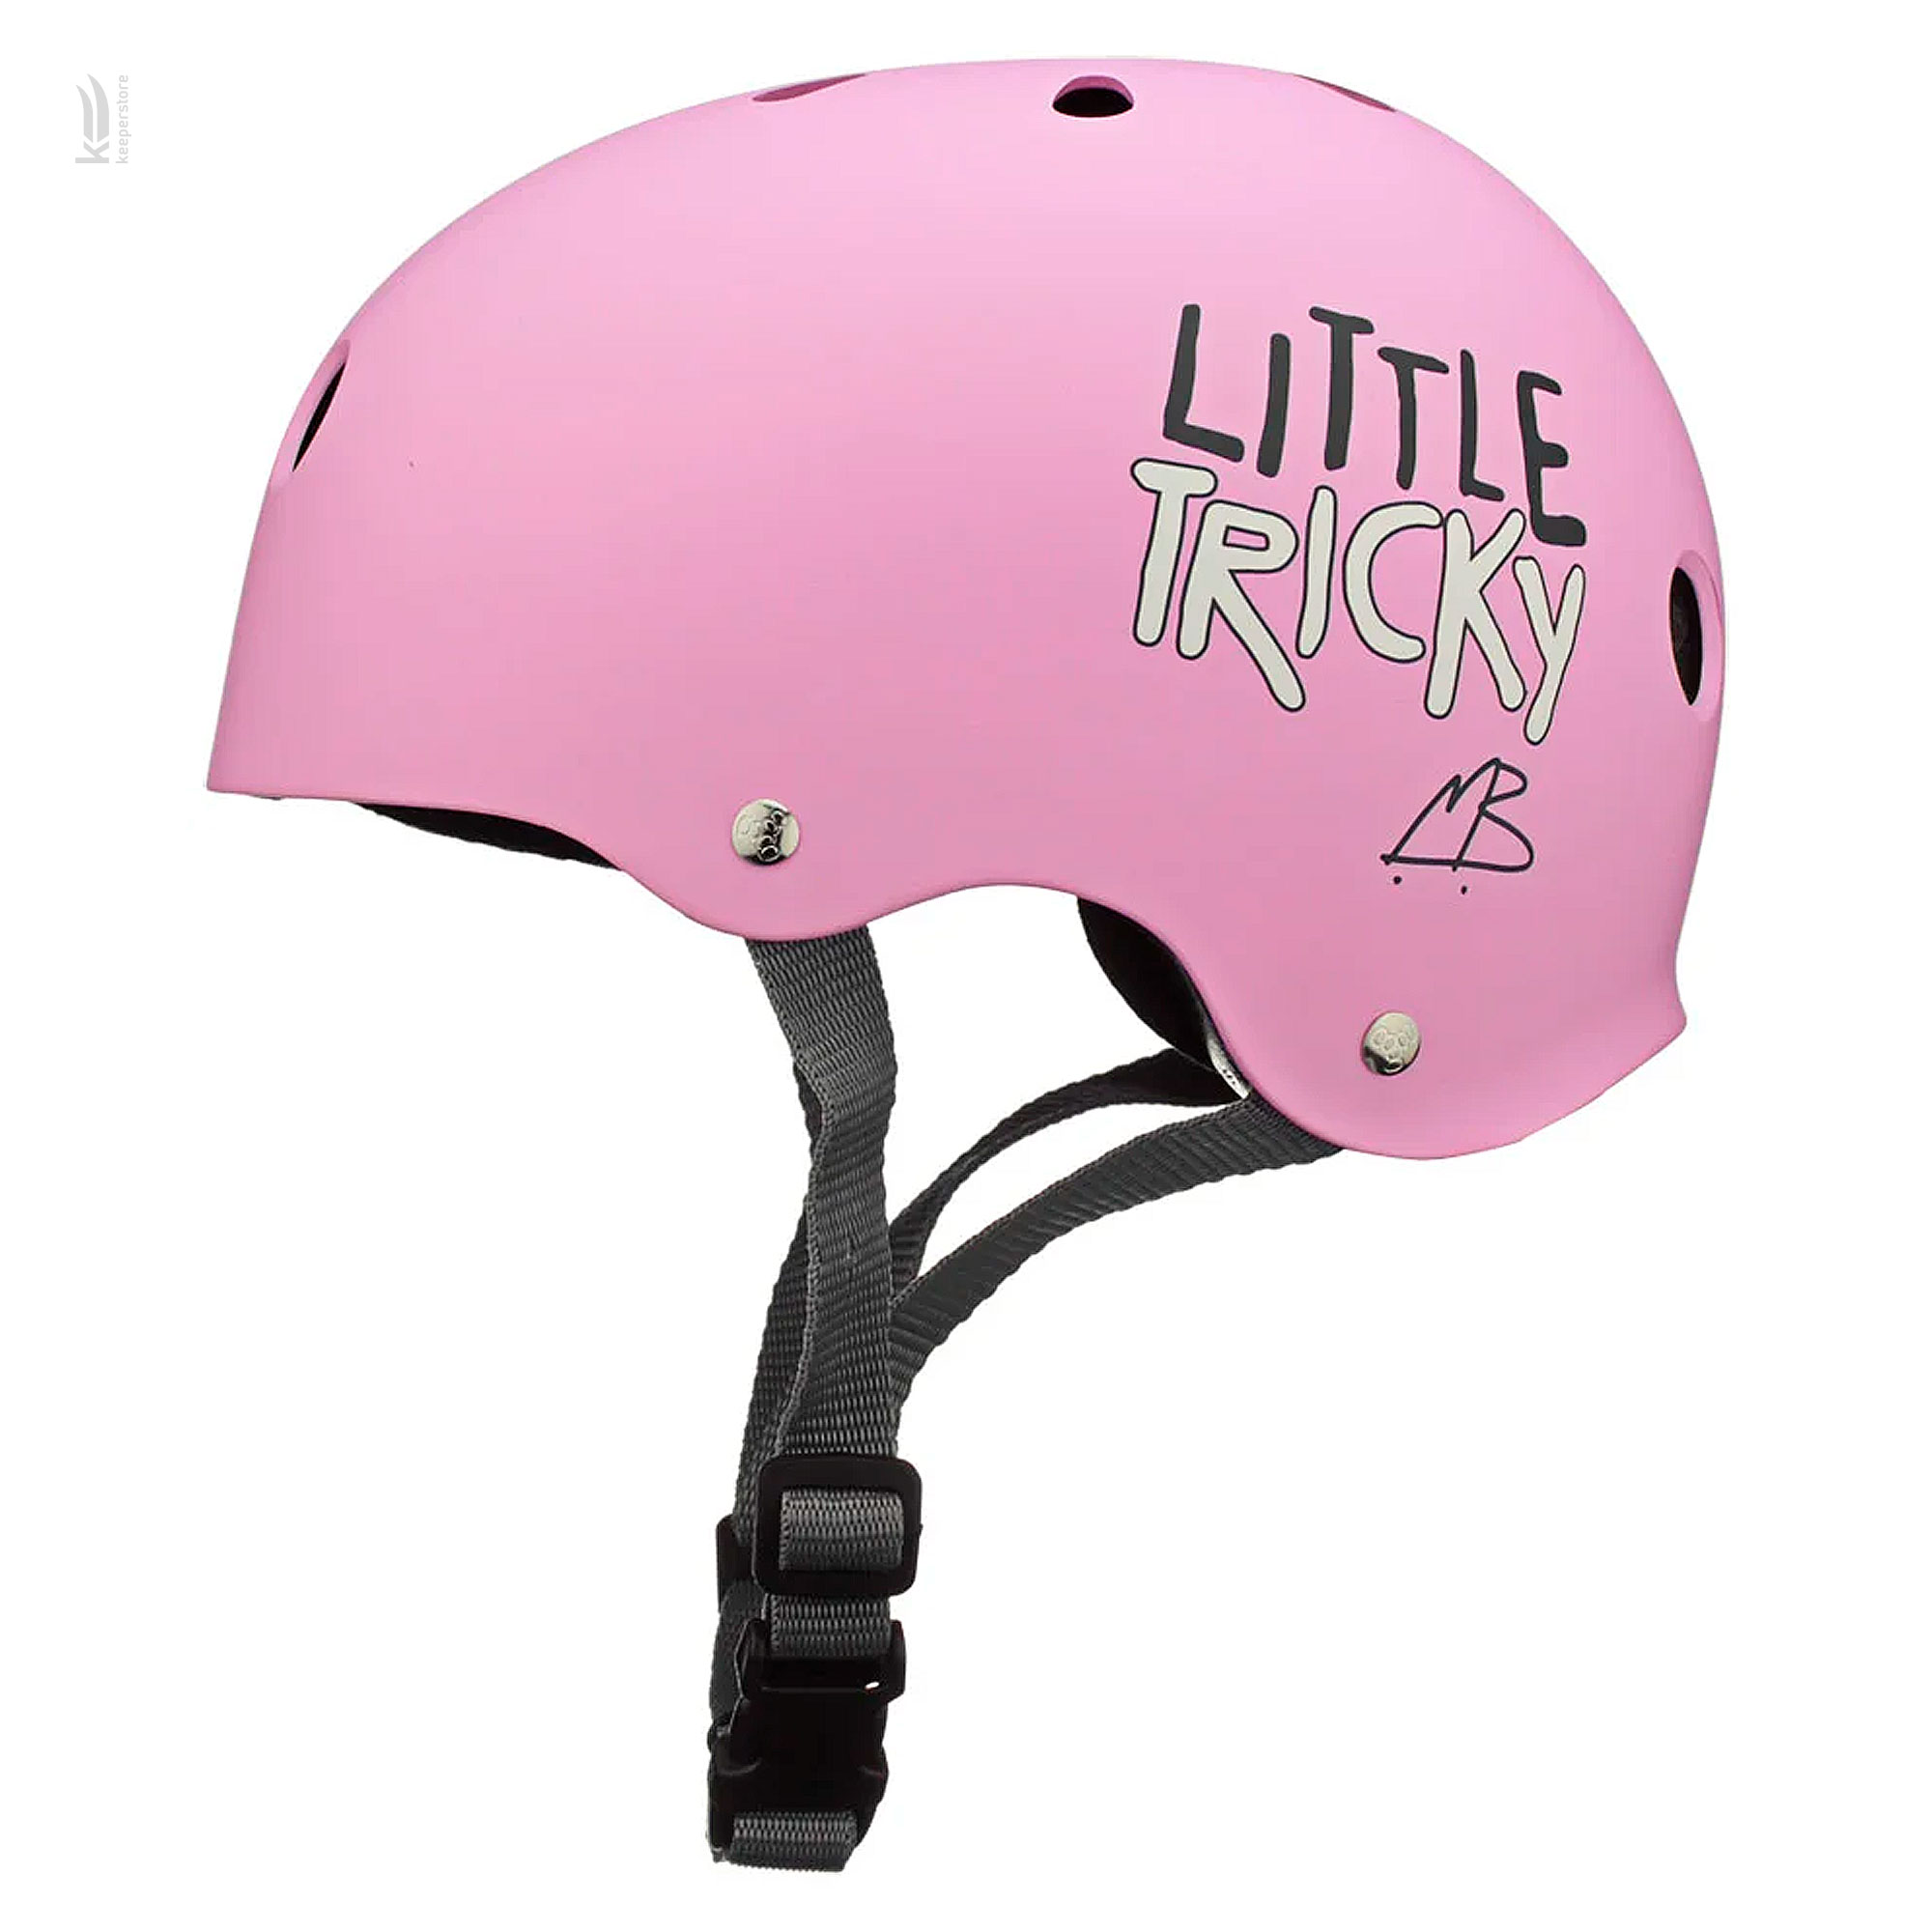 Отзывы защитный шлем для детей Triple8 Little Tricky Pink Rubber в Украине